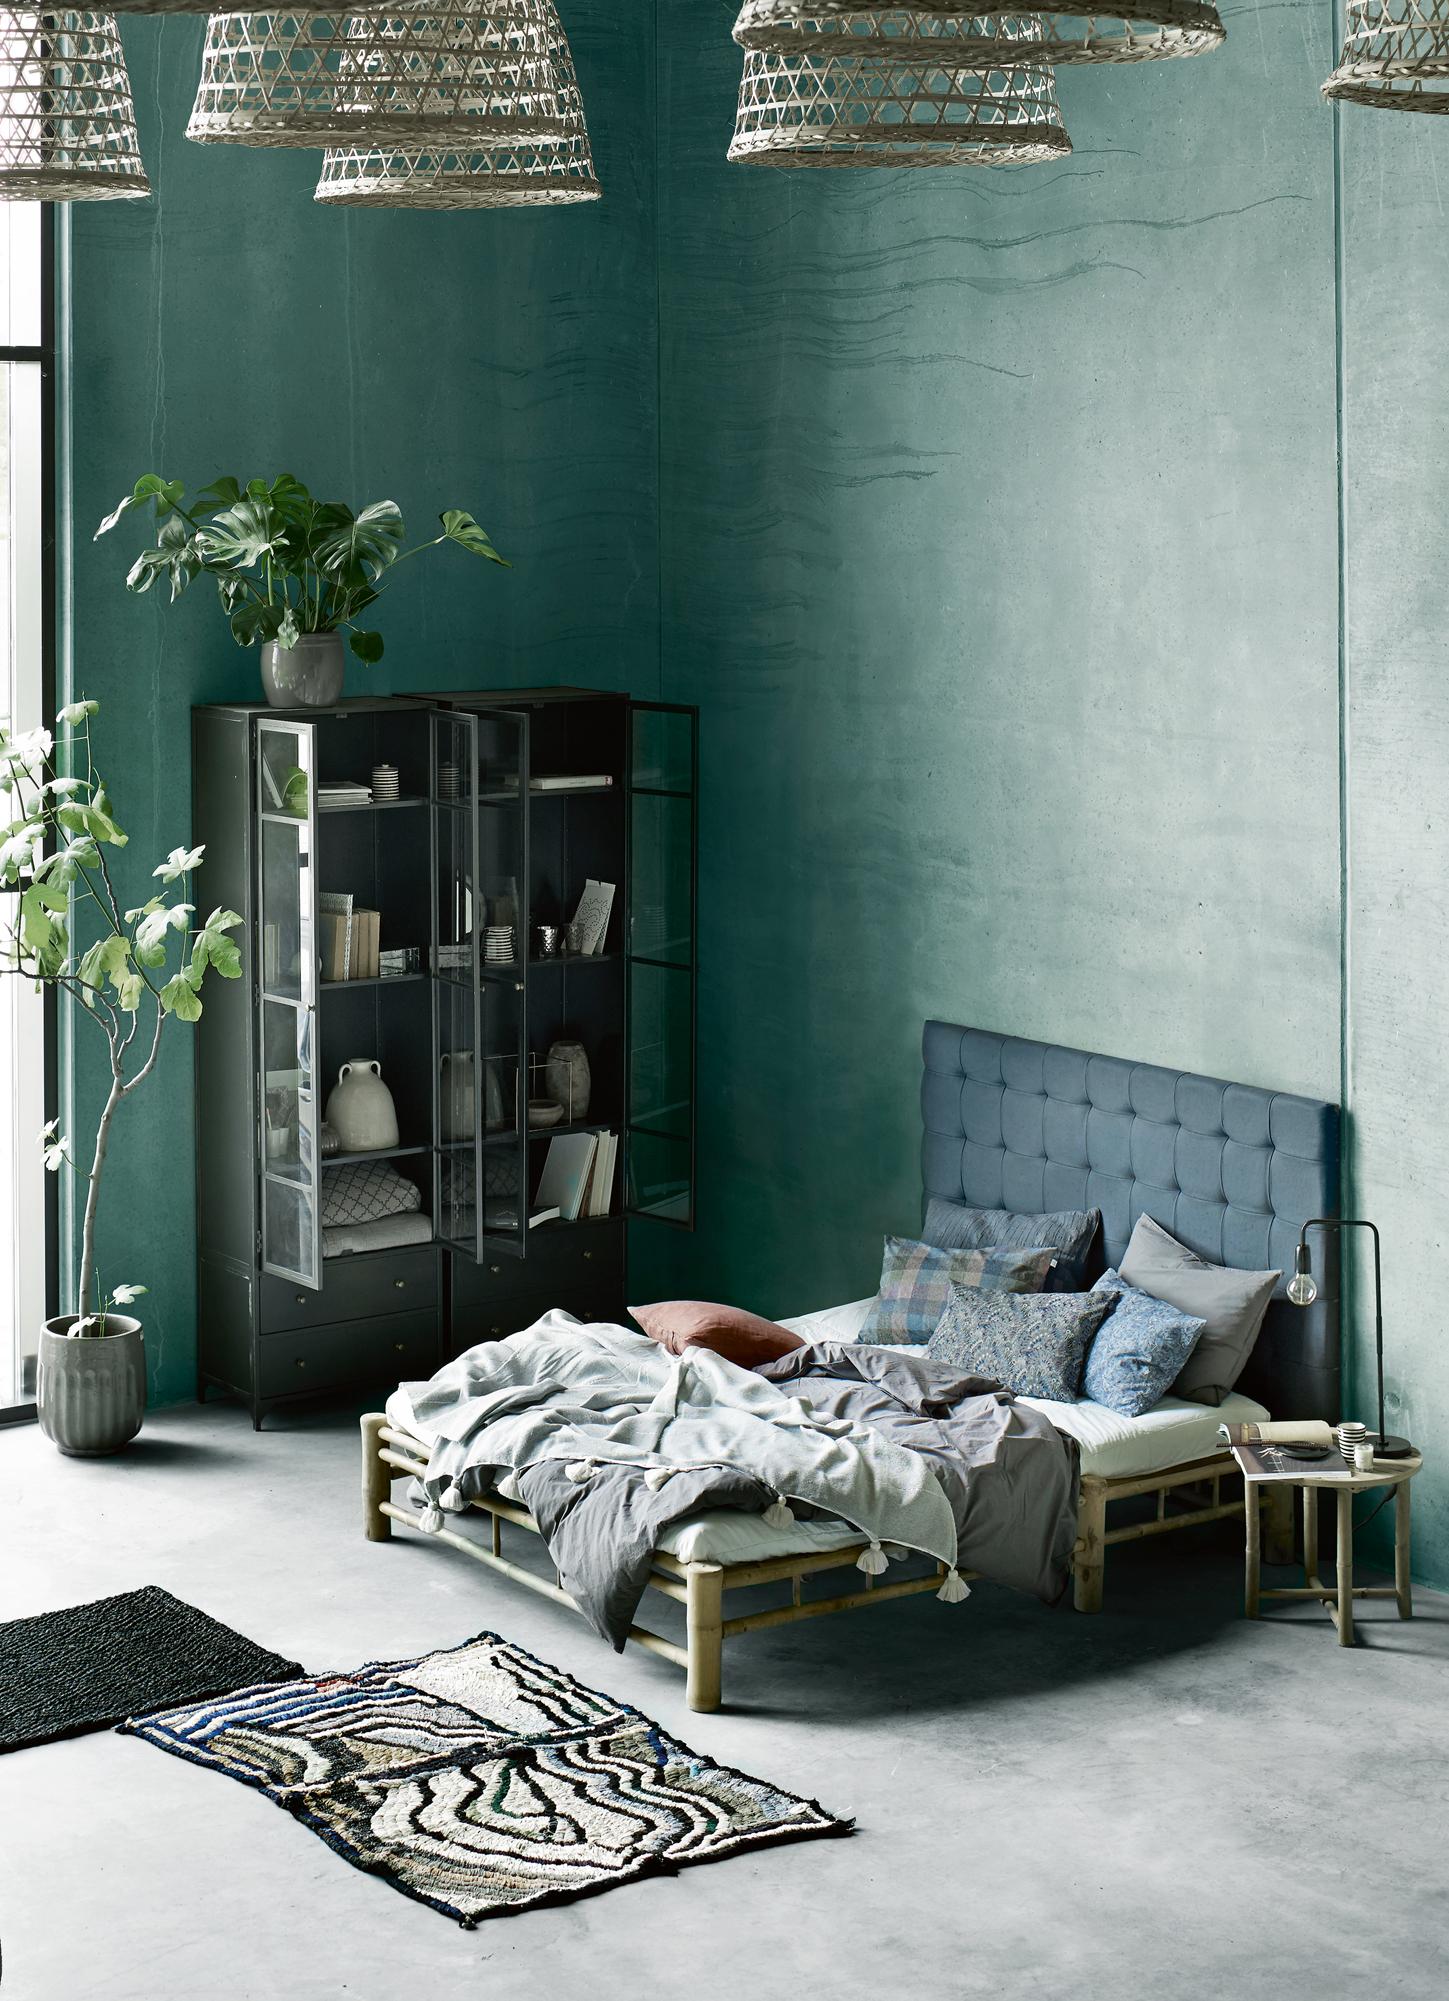 Farbgestaltung im Schlafzimmer #bett #zimmerpflanze #schlafzimmergestalten #bettvorleger #zimmergestaltung ©Tine K Home